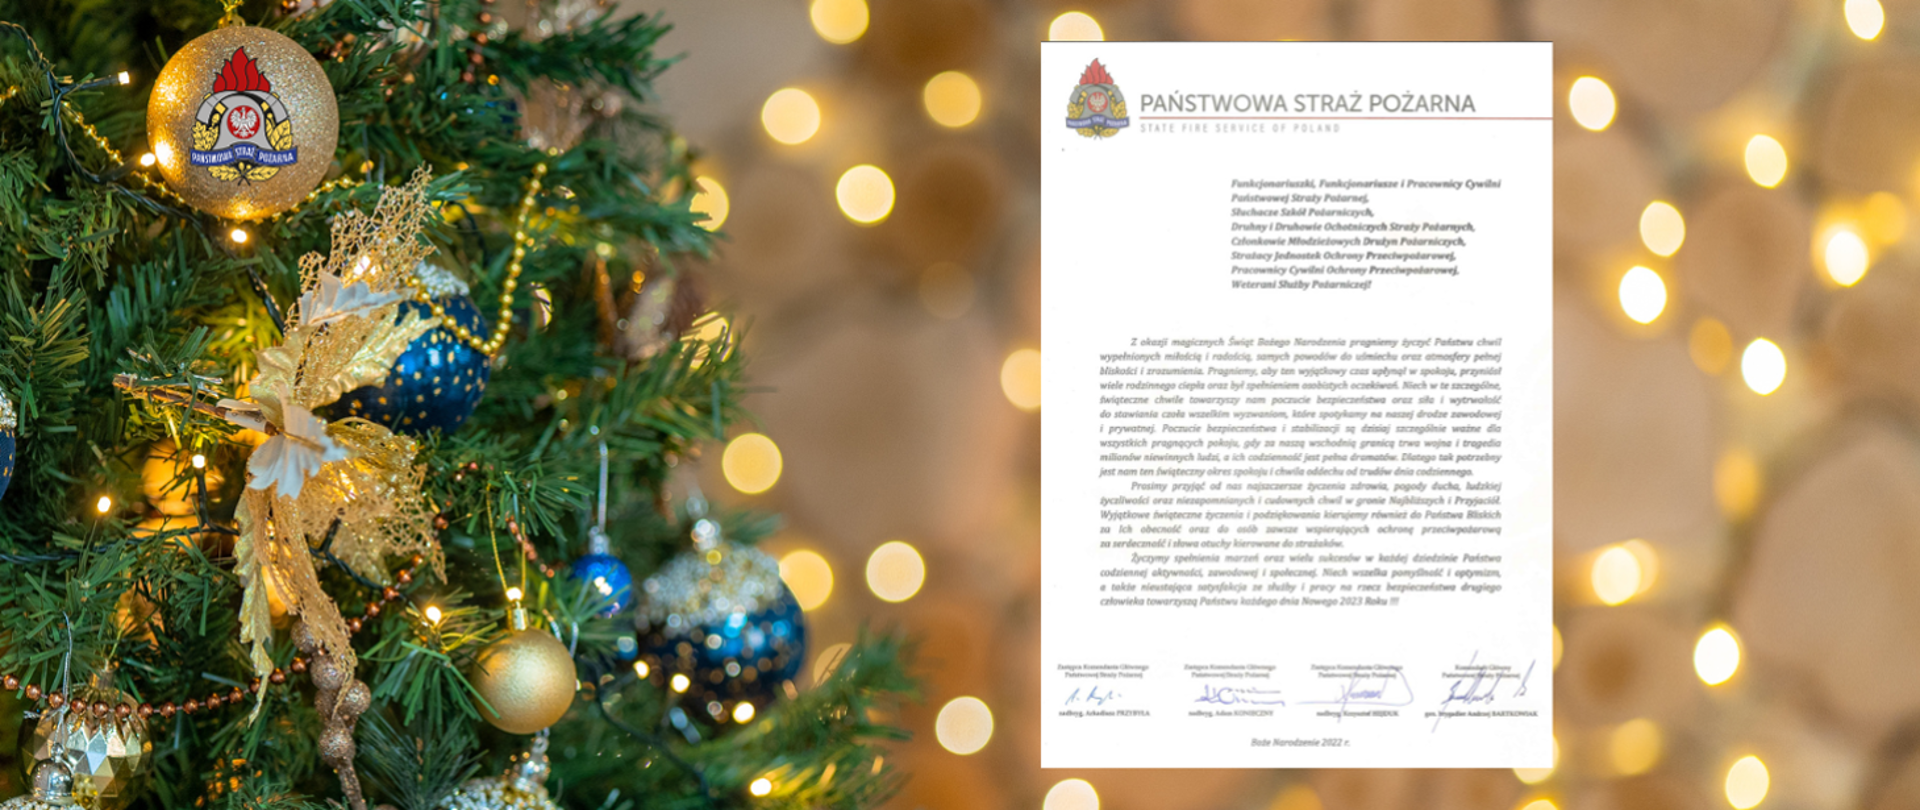 Życzenia świąteczno-noworoczne Małopolskiego Komendanta Wojewódzkiego Państwowej Straży Pożarnej